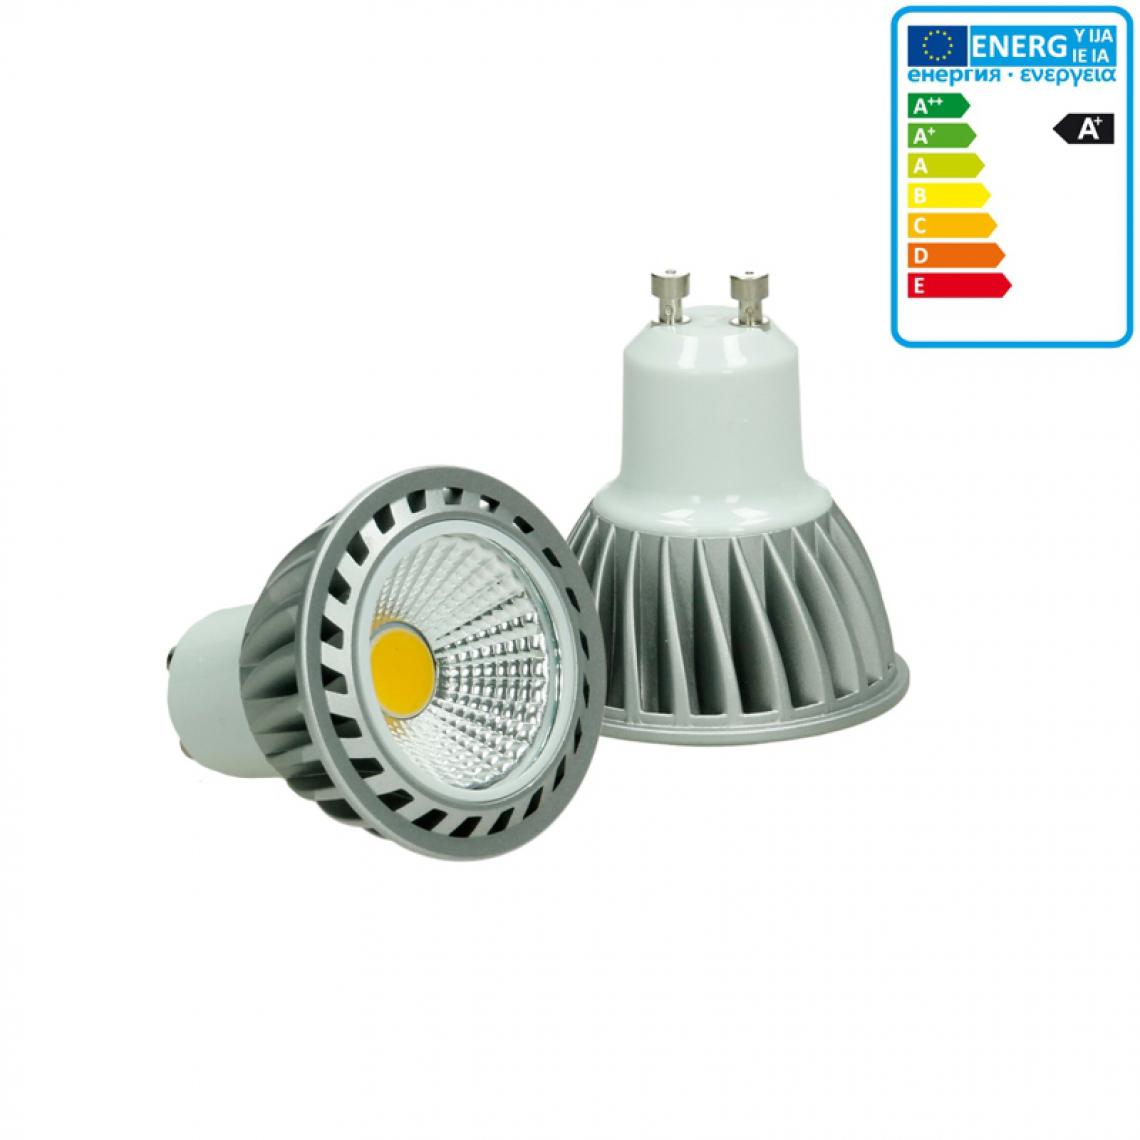 Ecd Germany - ECD Germany COB GU10 Ampoule Lampe Spot Lumière 4W Blanc Neutre - Ampoules LED